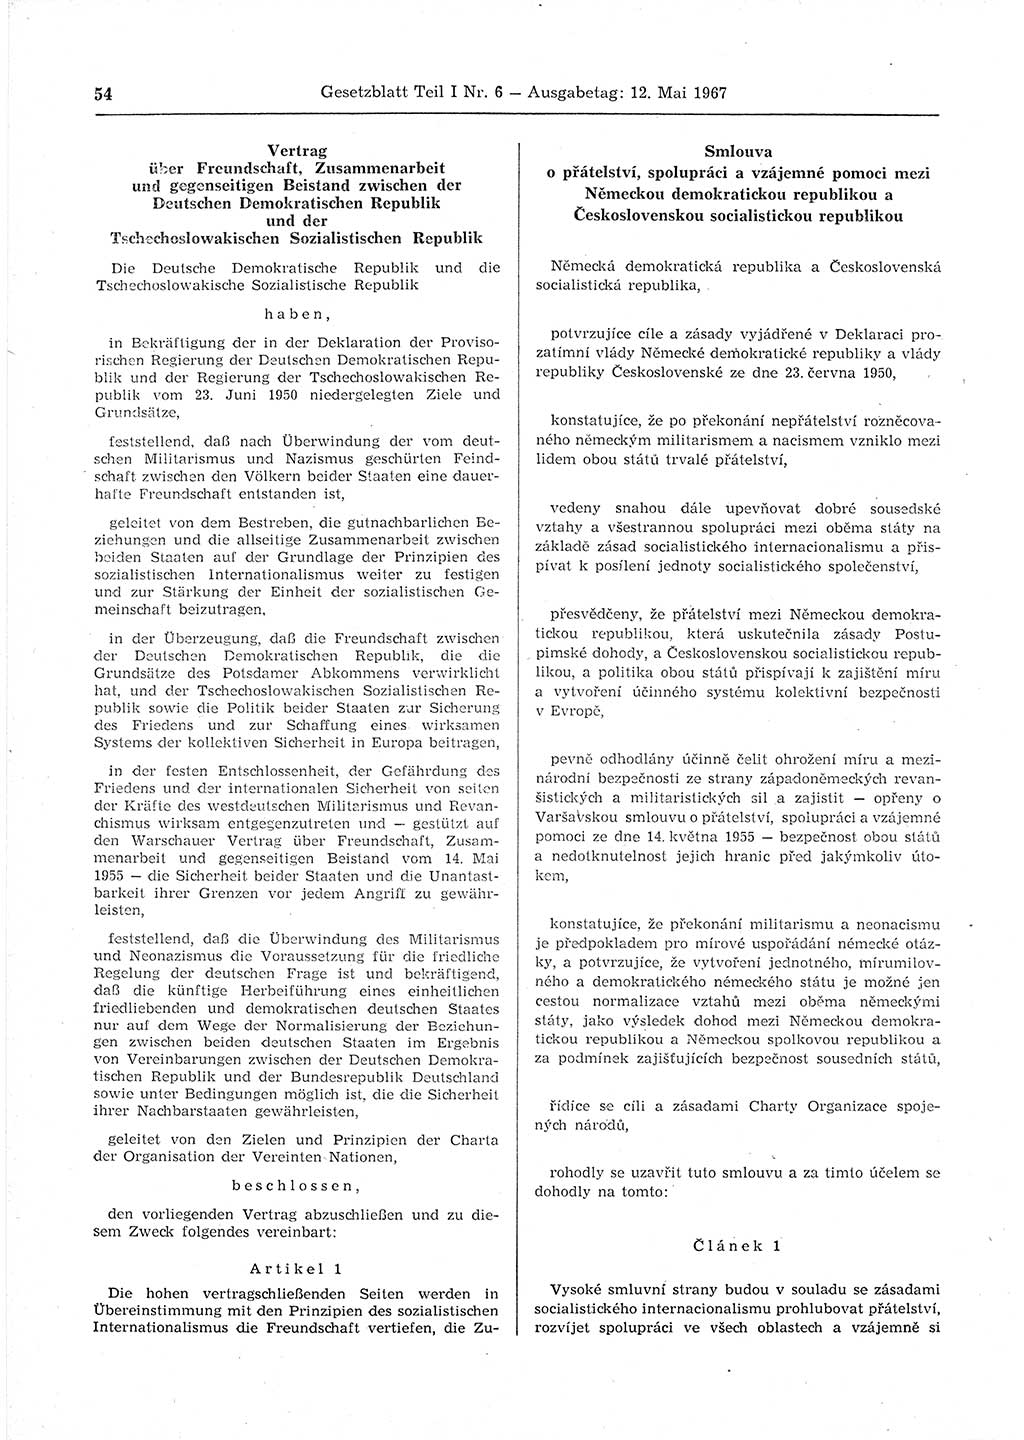 Gesetzblatt (GBl.) der Deutschen Demokratischen Republik (DDR) Teil Ⅰ 1967, Seite 54 (GBl. DDR Ⅰ 1967, S. 54)